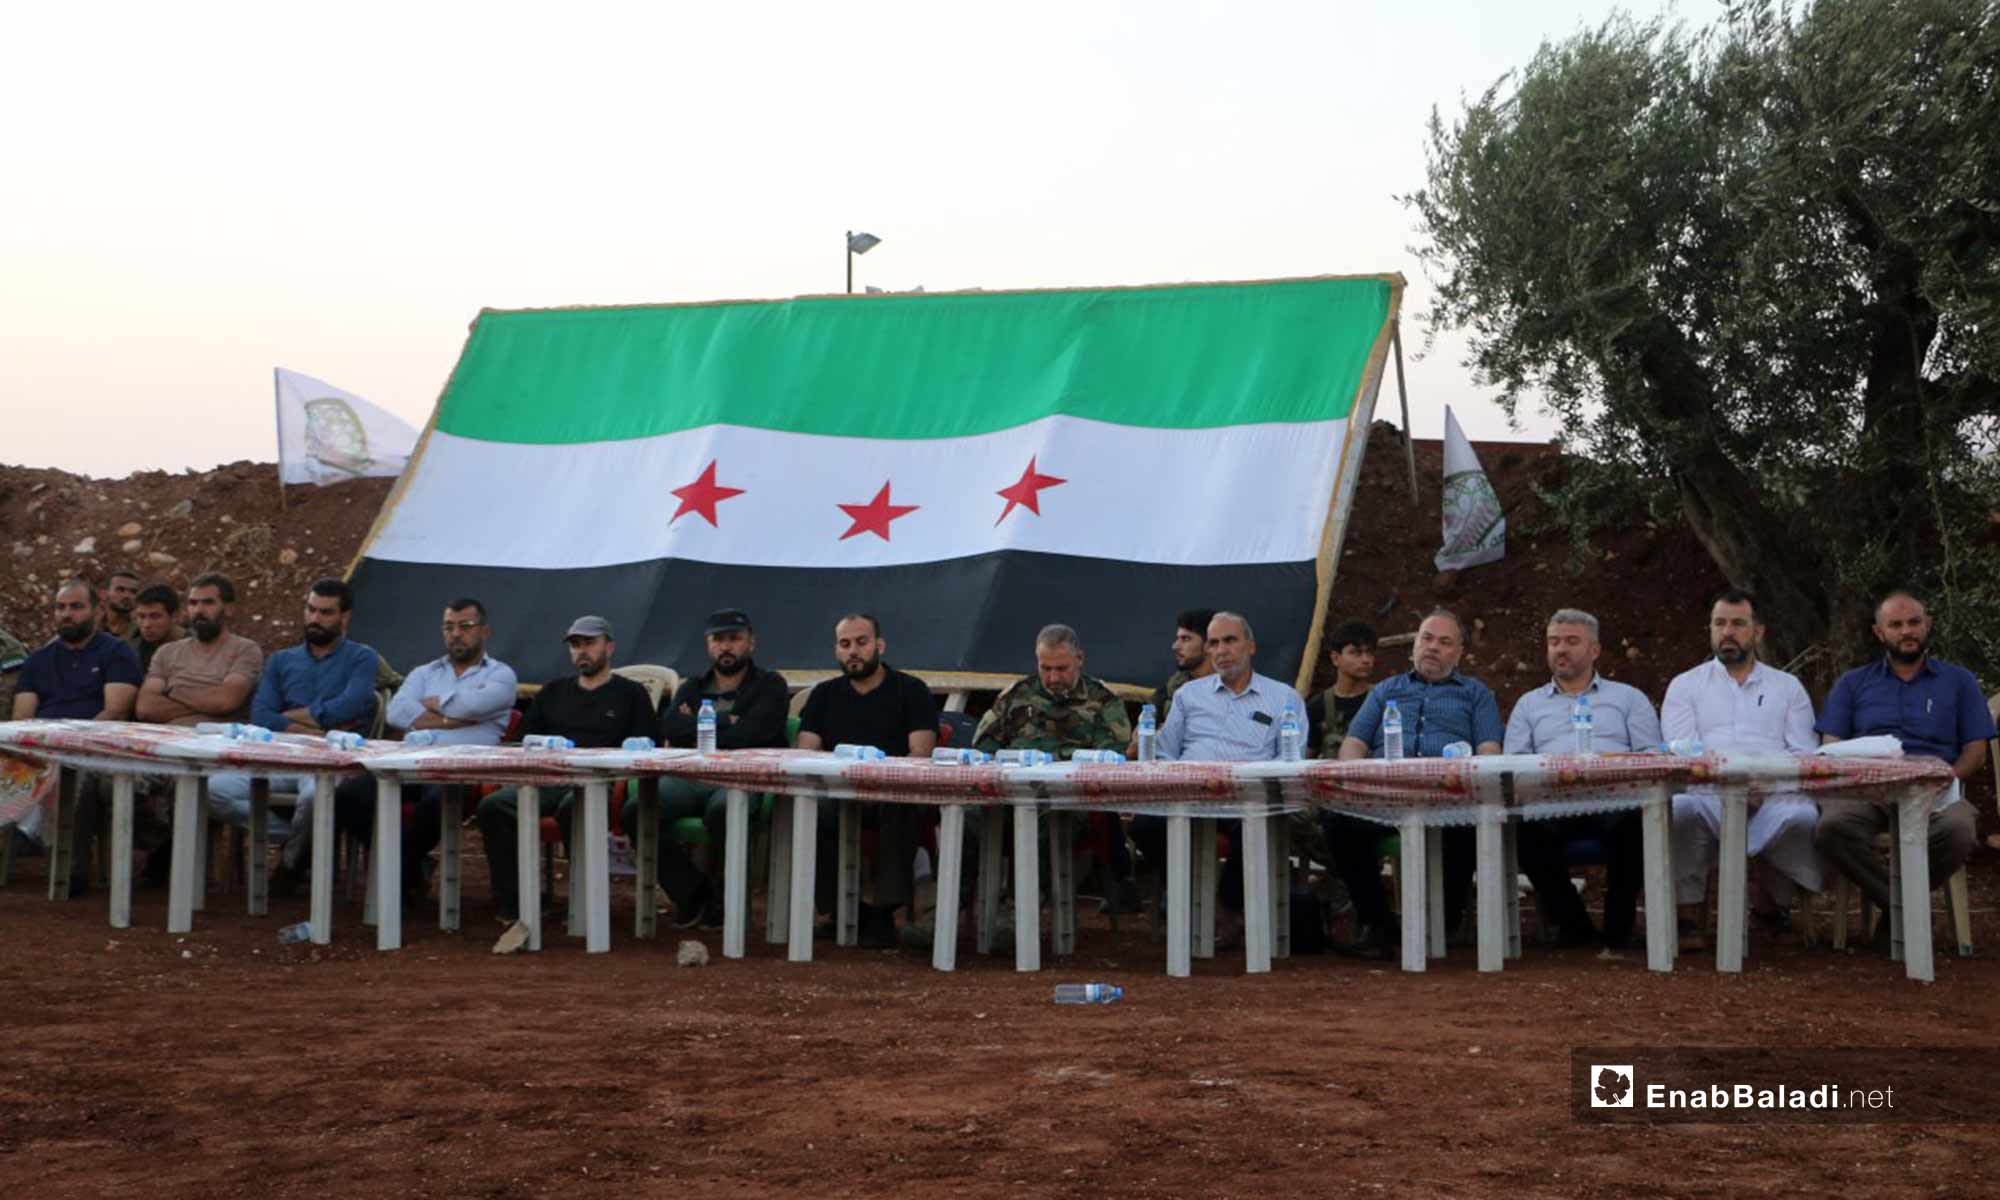 حفل تكريم لمقاتلين في الجيش السوري الحر حصلوا على الشهادة الثانوية بدرجات عالية في ريف حلب الشمالي - 2 من آب 2018 (عنب بلدي)